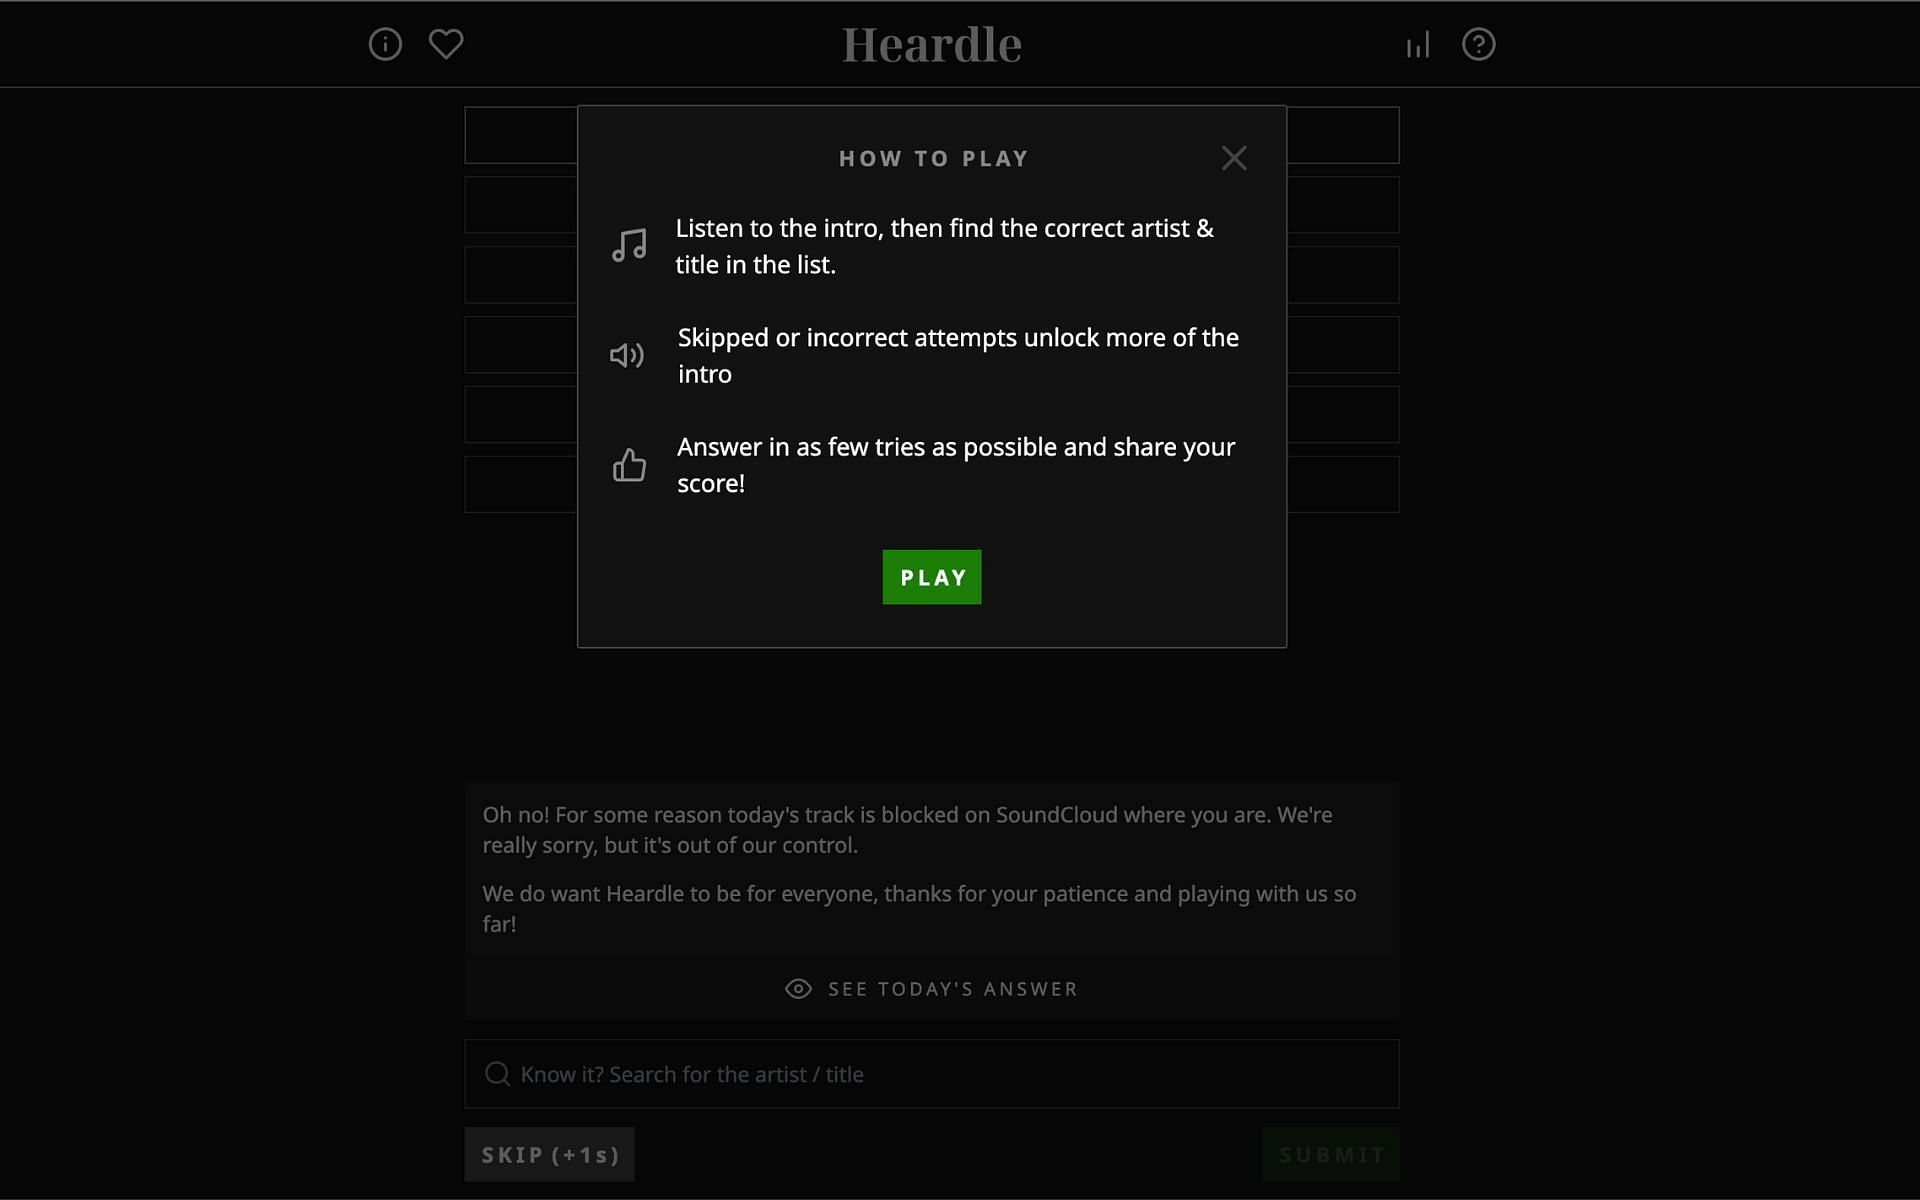 Instructions on how to play Heardle (Image via Heardle.com)